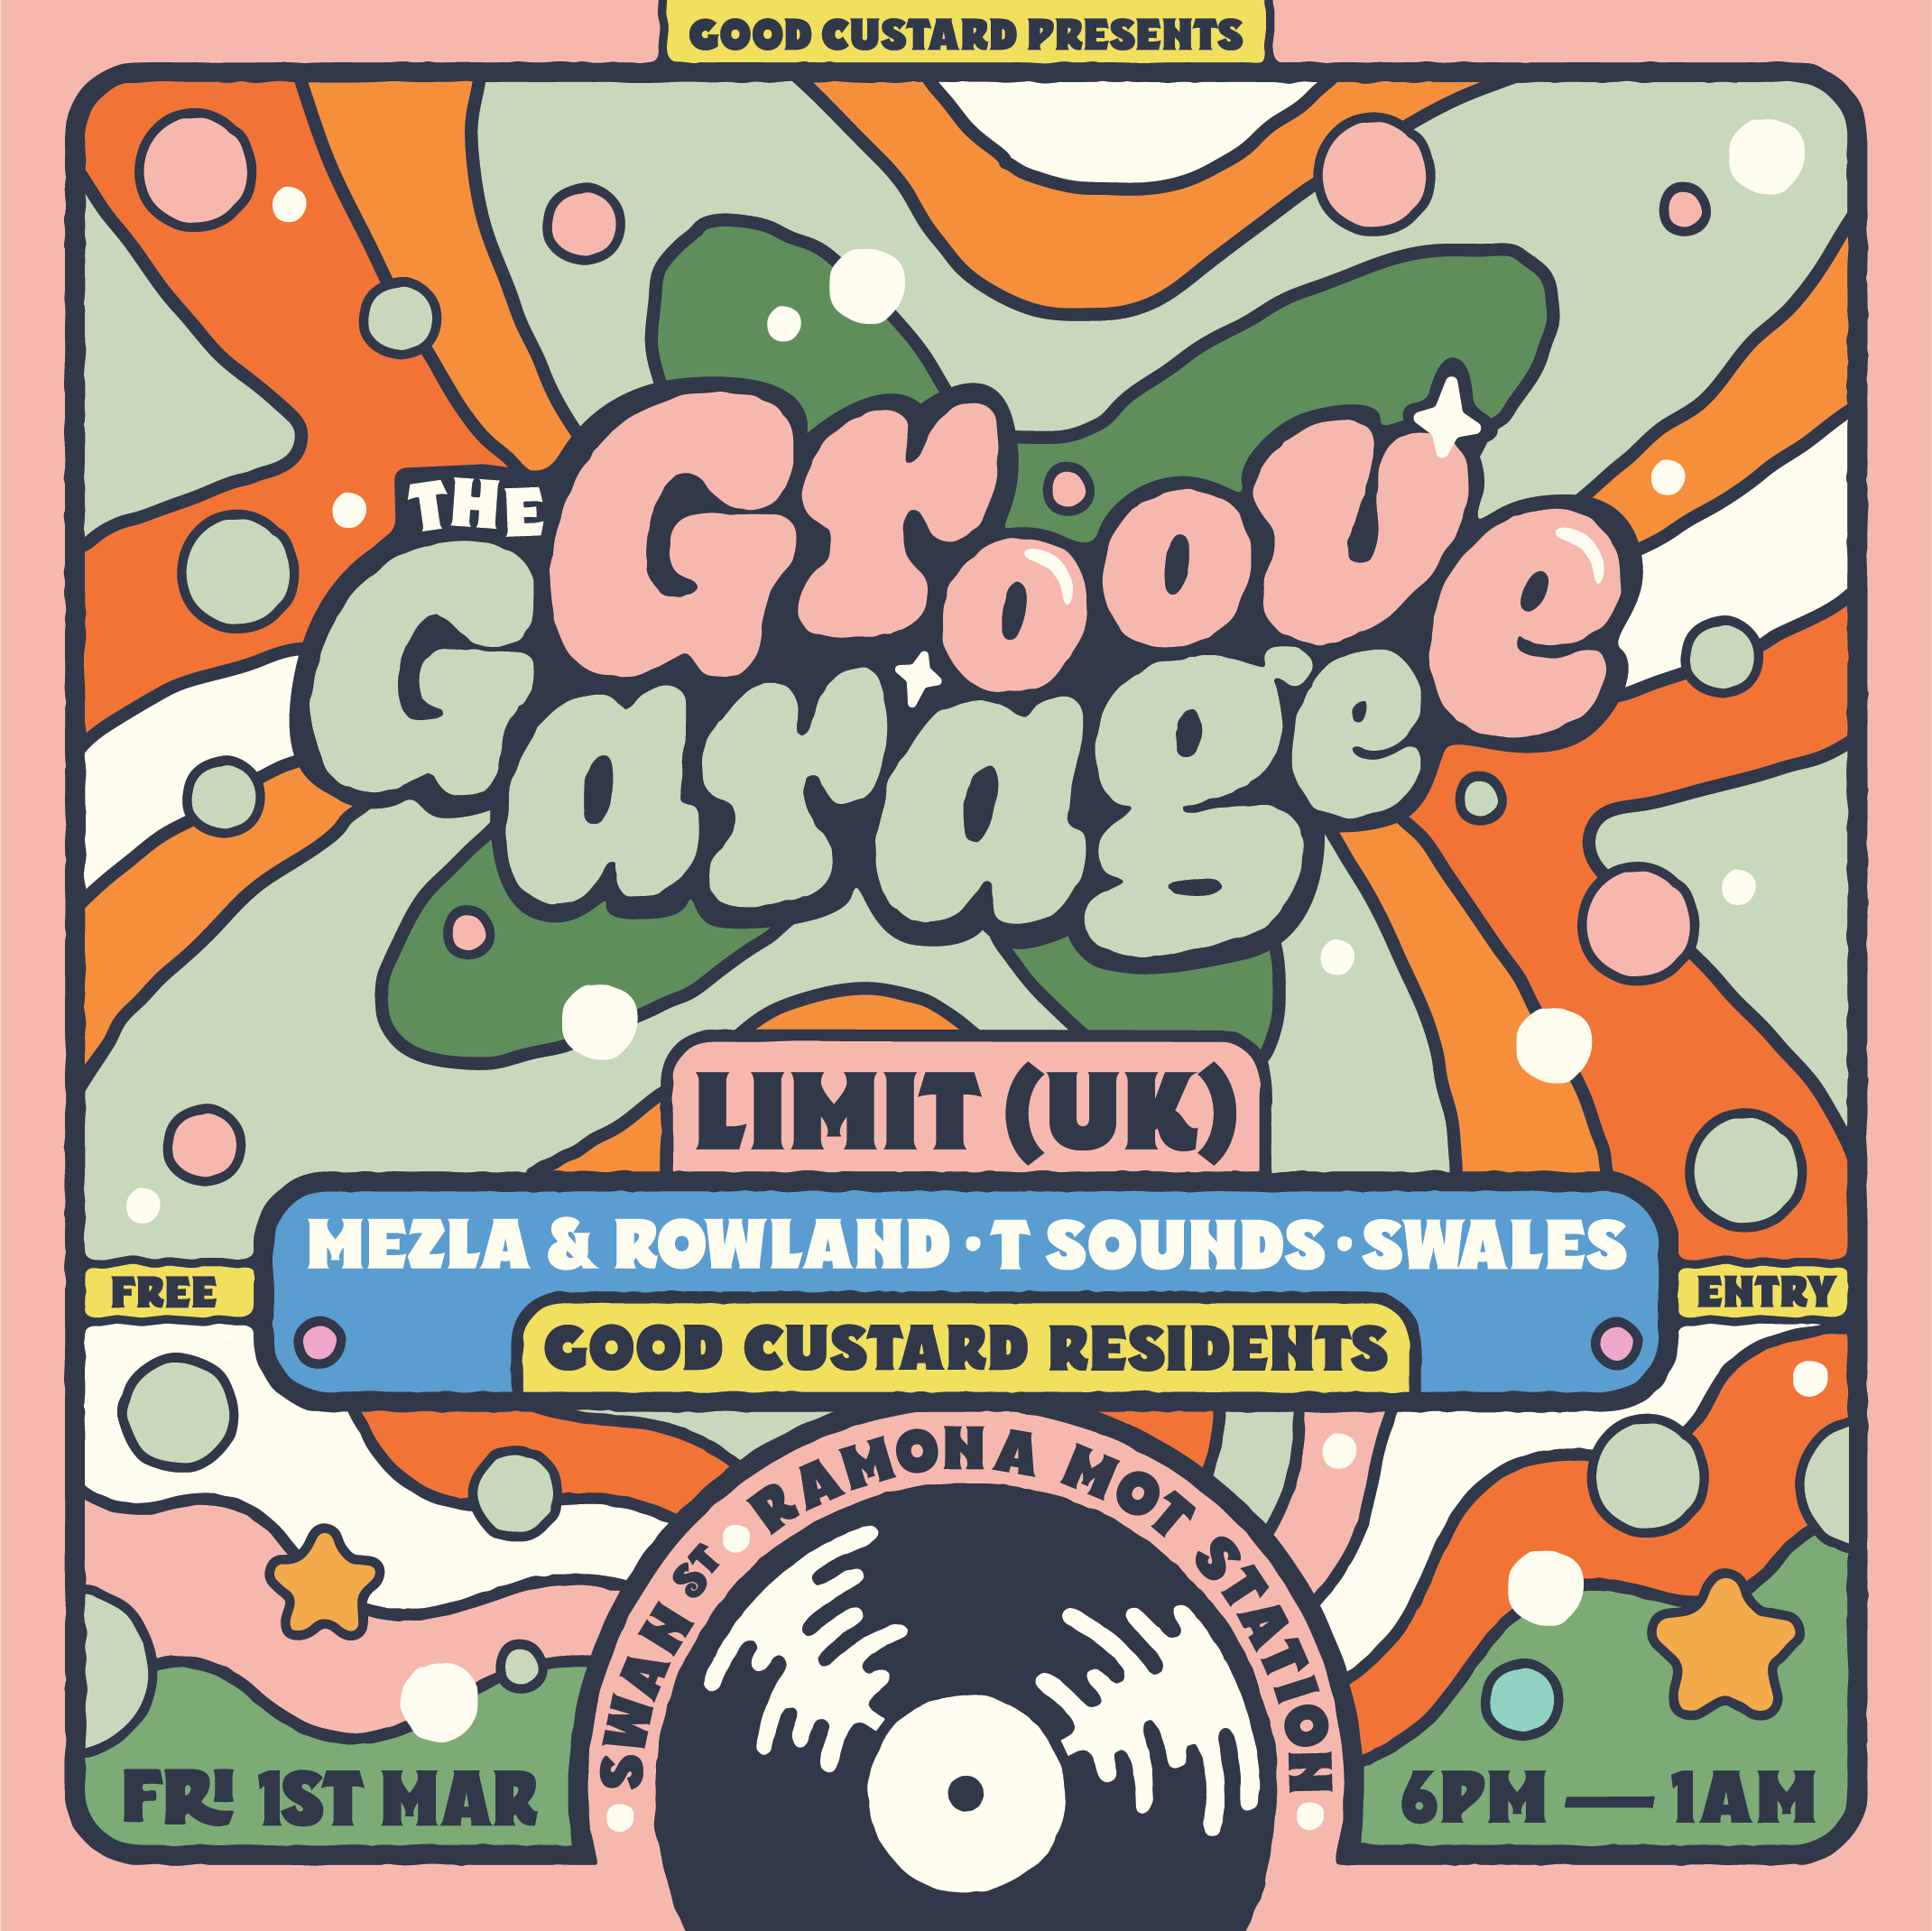 Good Custard: The Groove Garage x LIMIT UK - フライヤー表